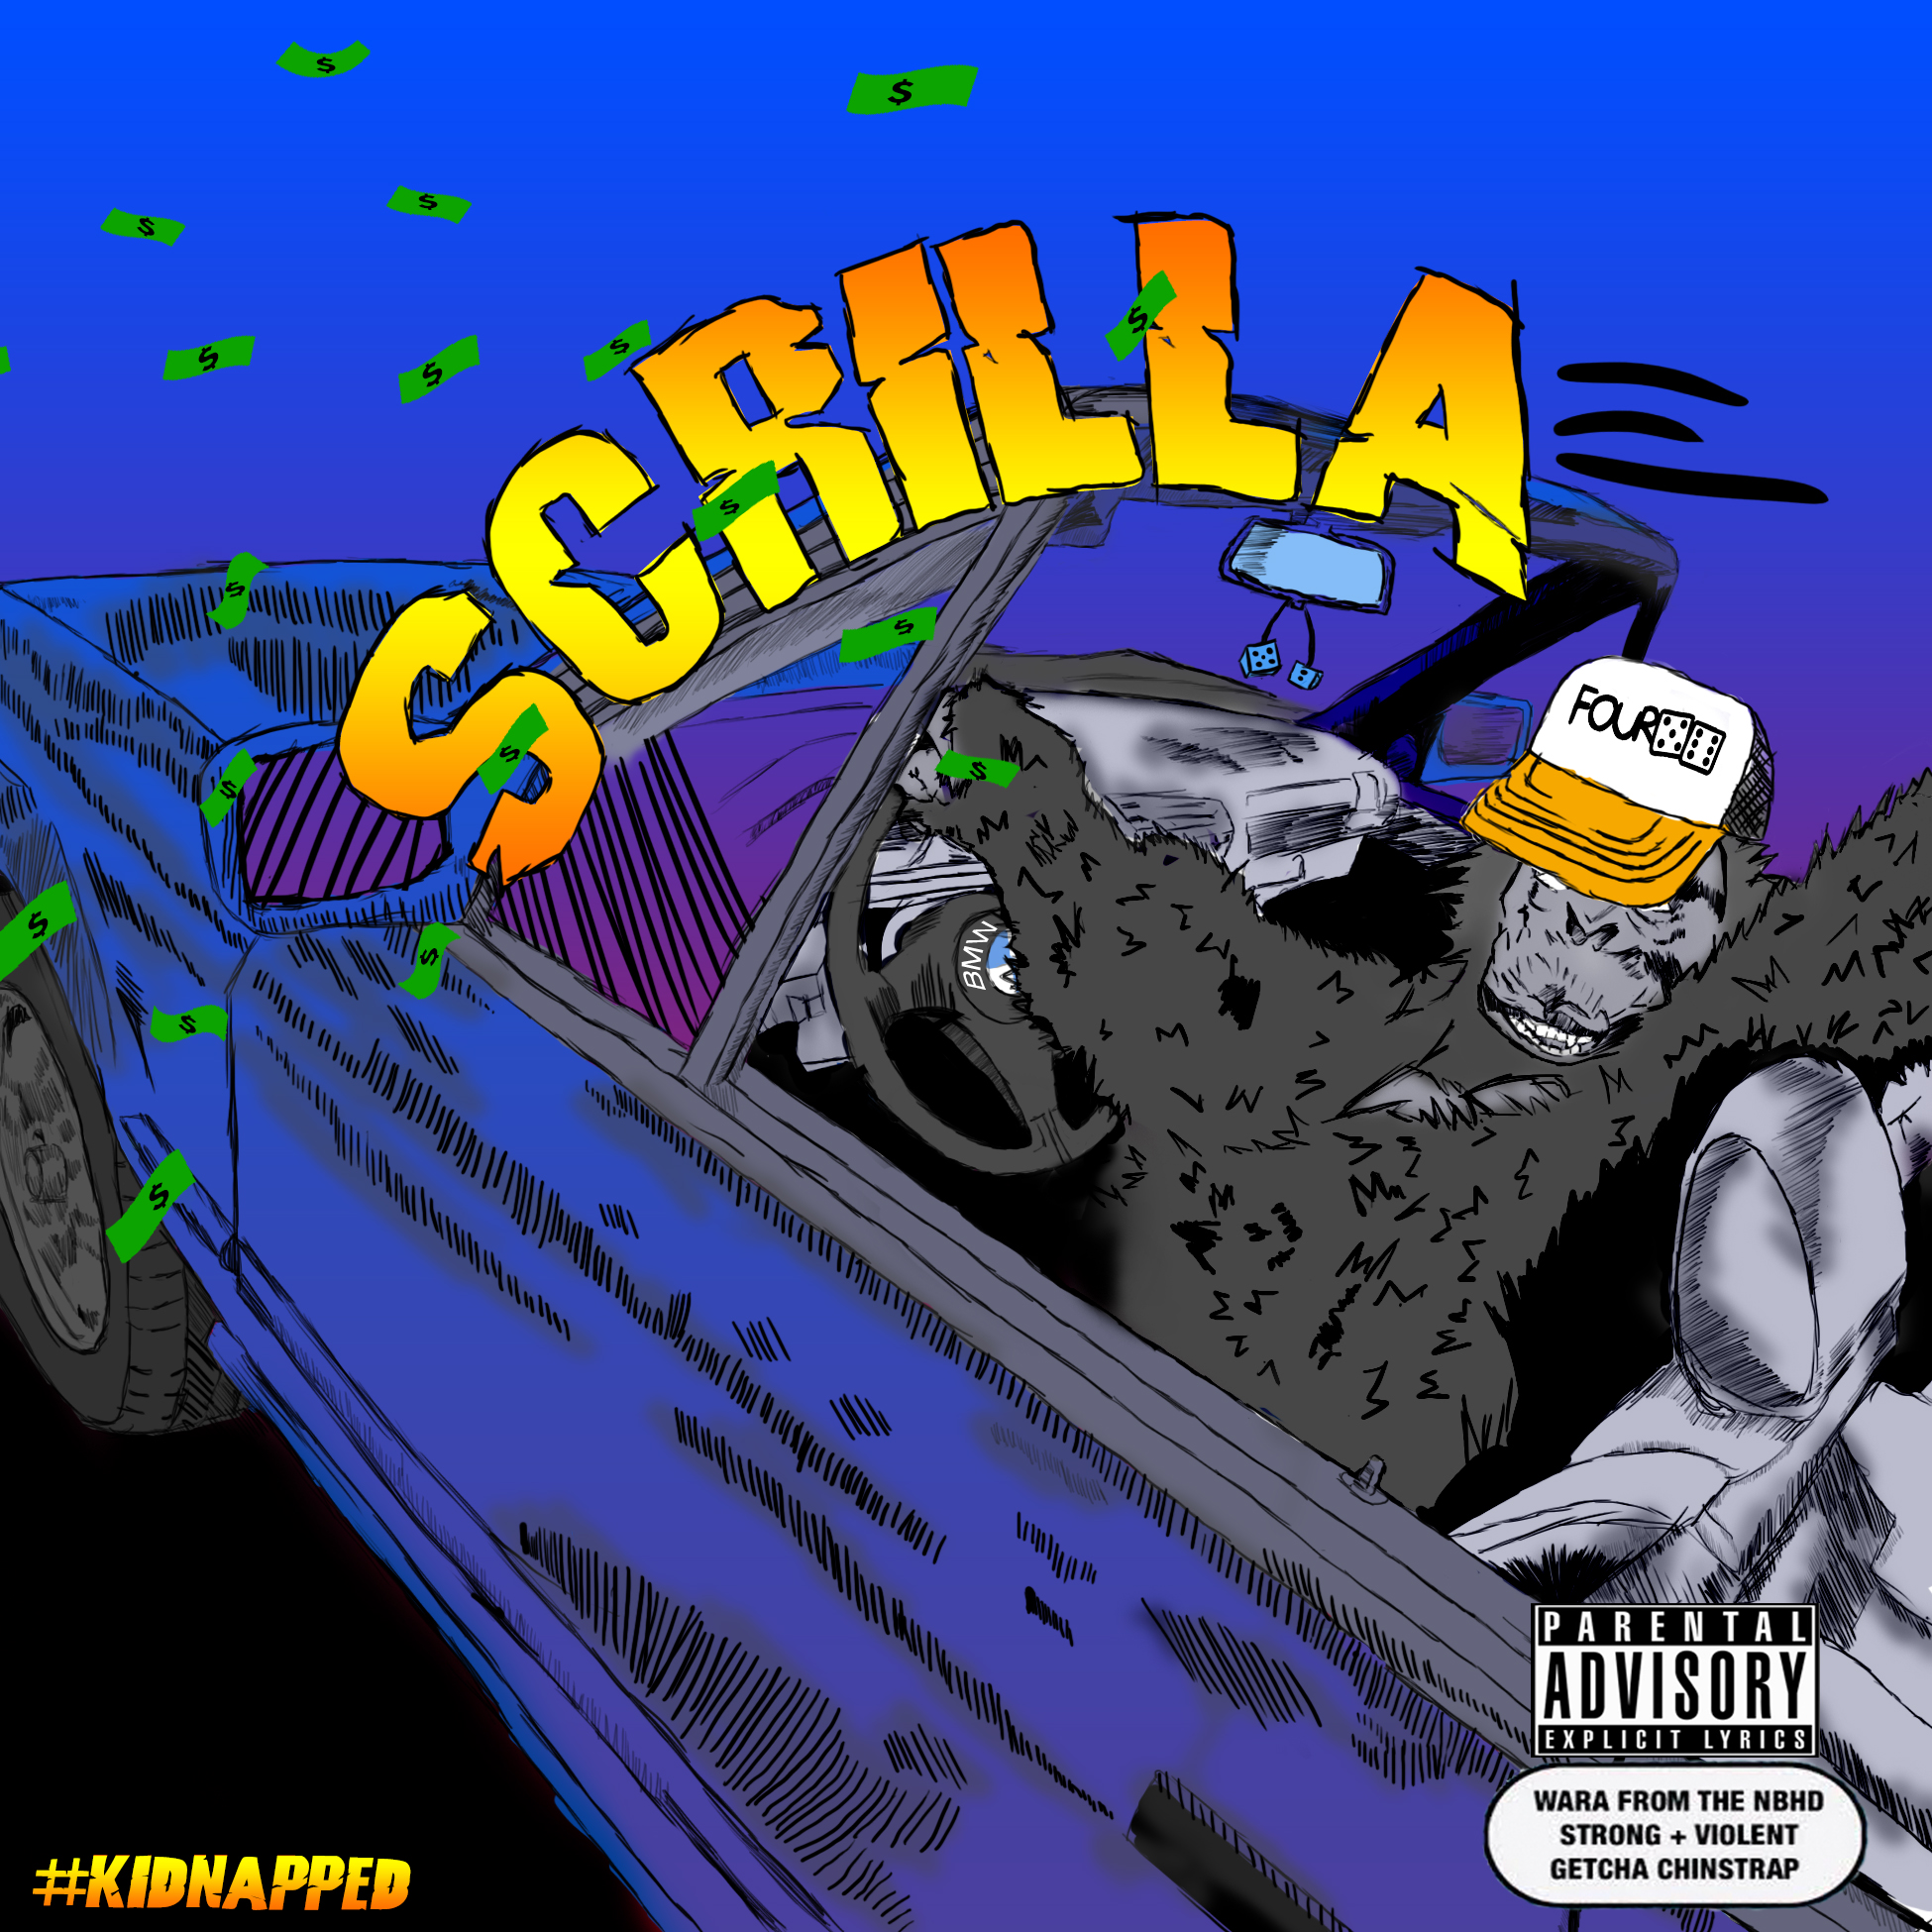 Scrilla